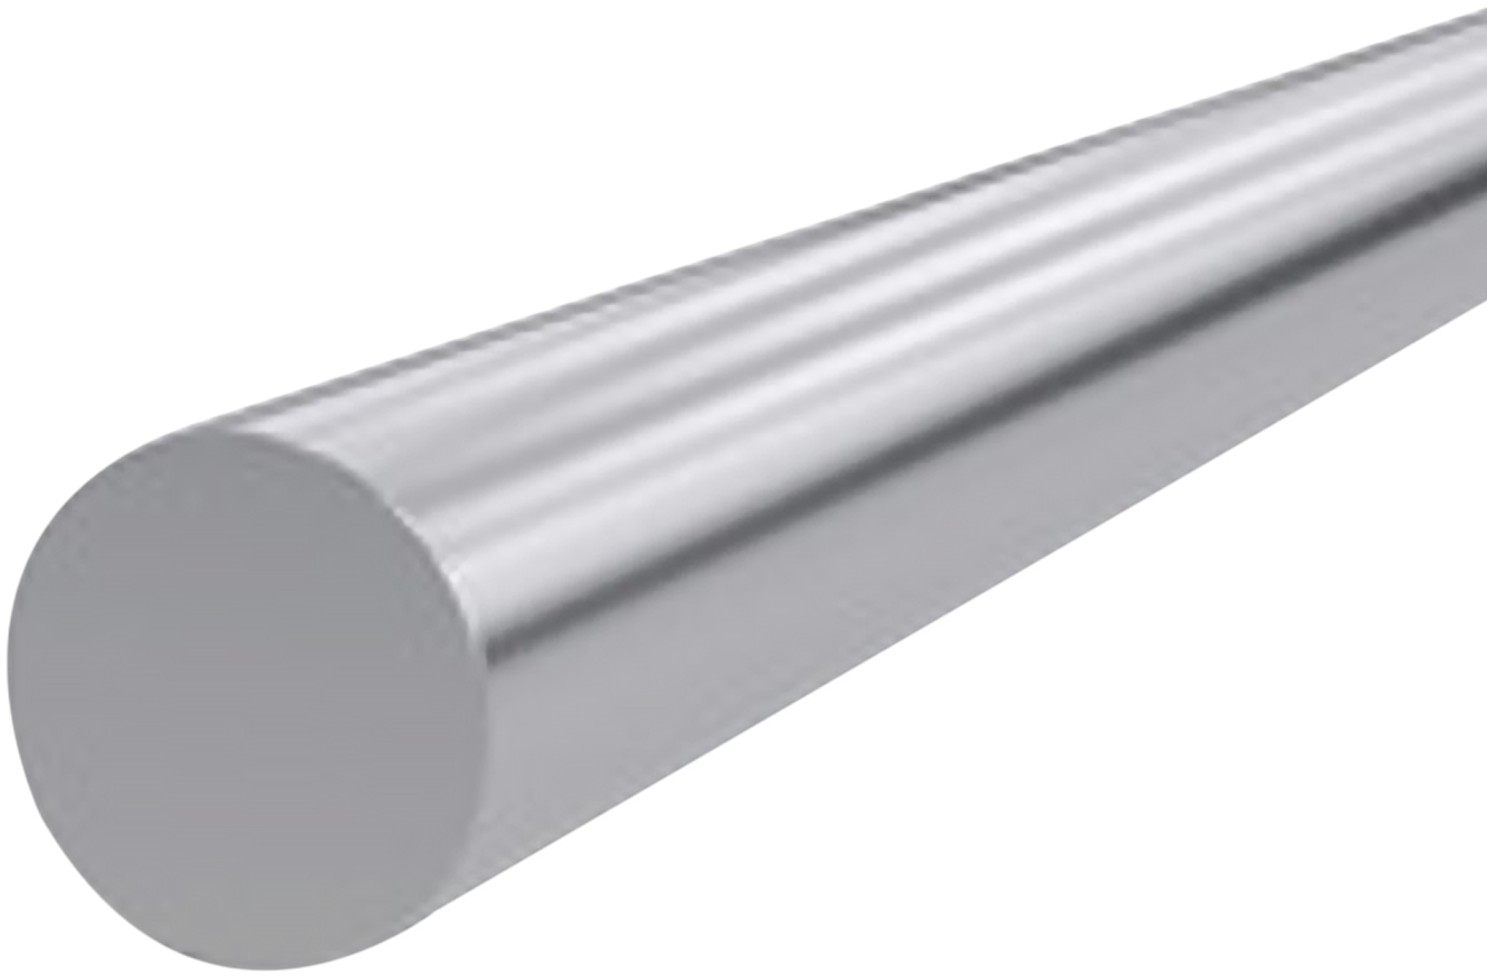 A Close-up Of A Metal Rod